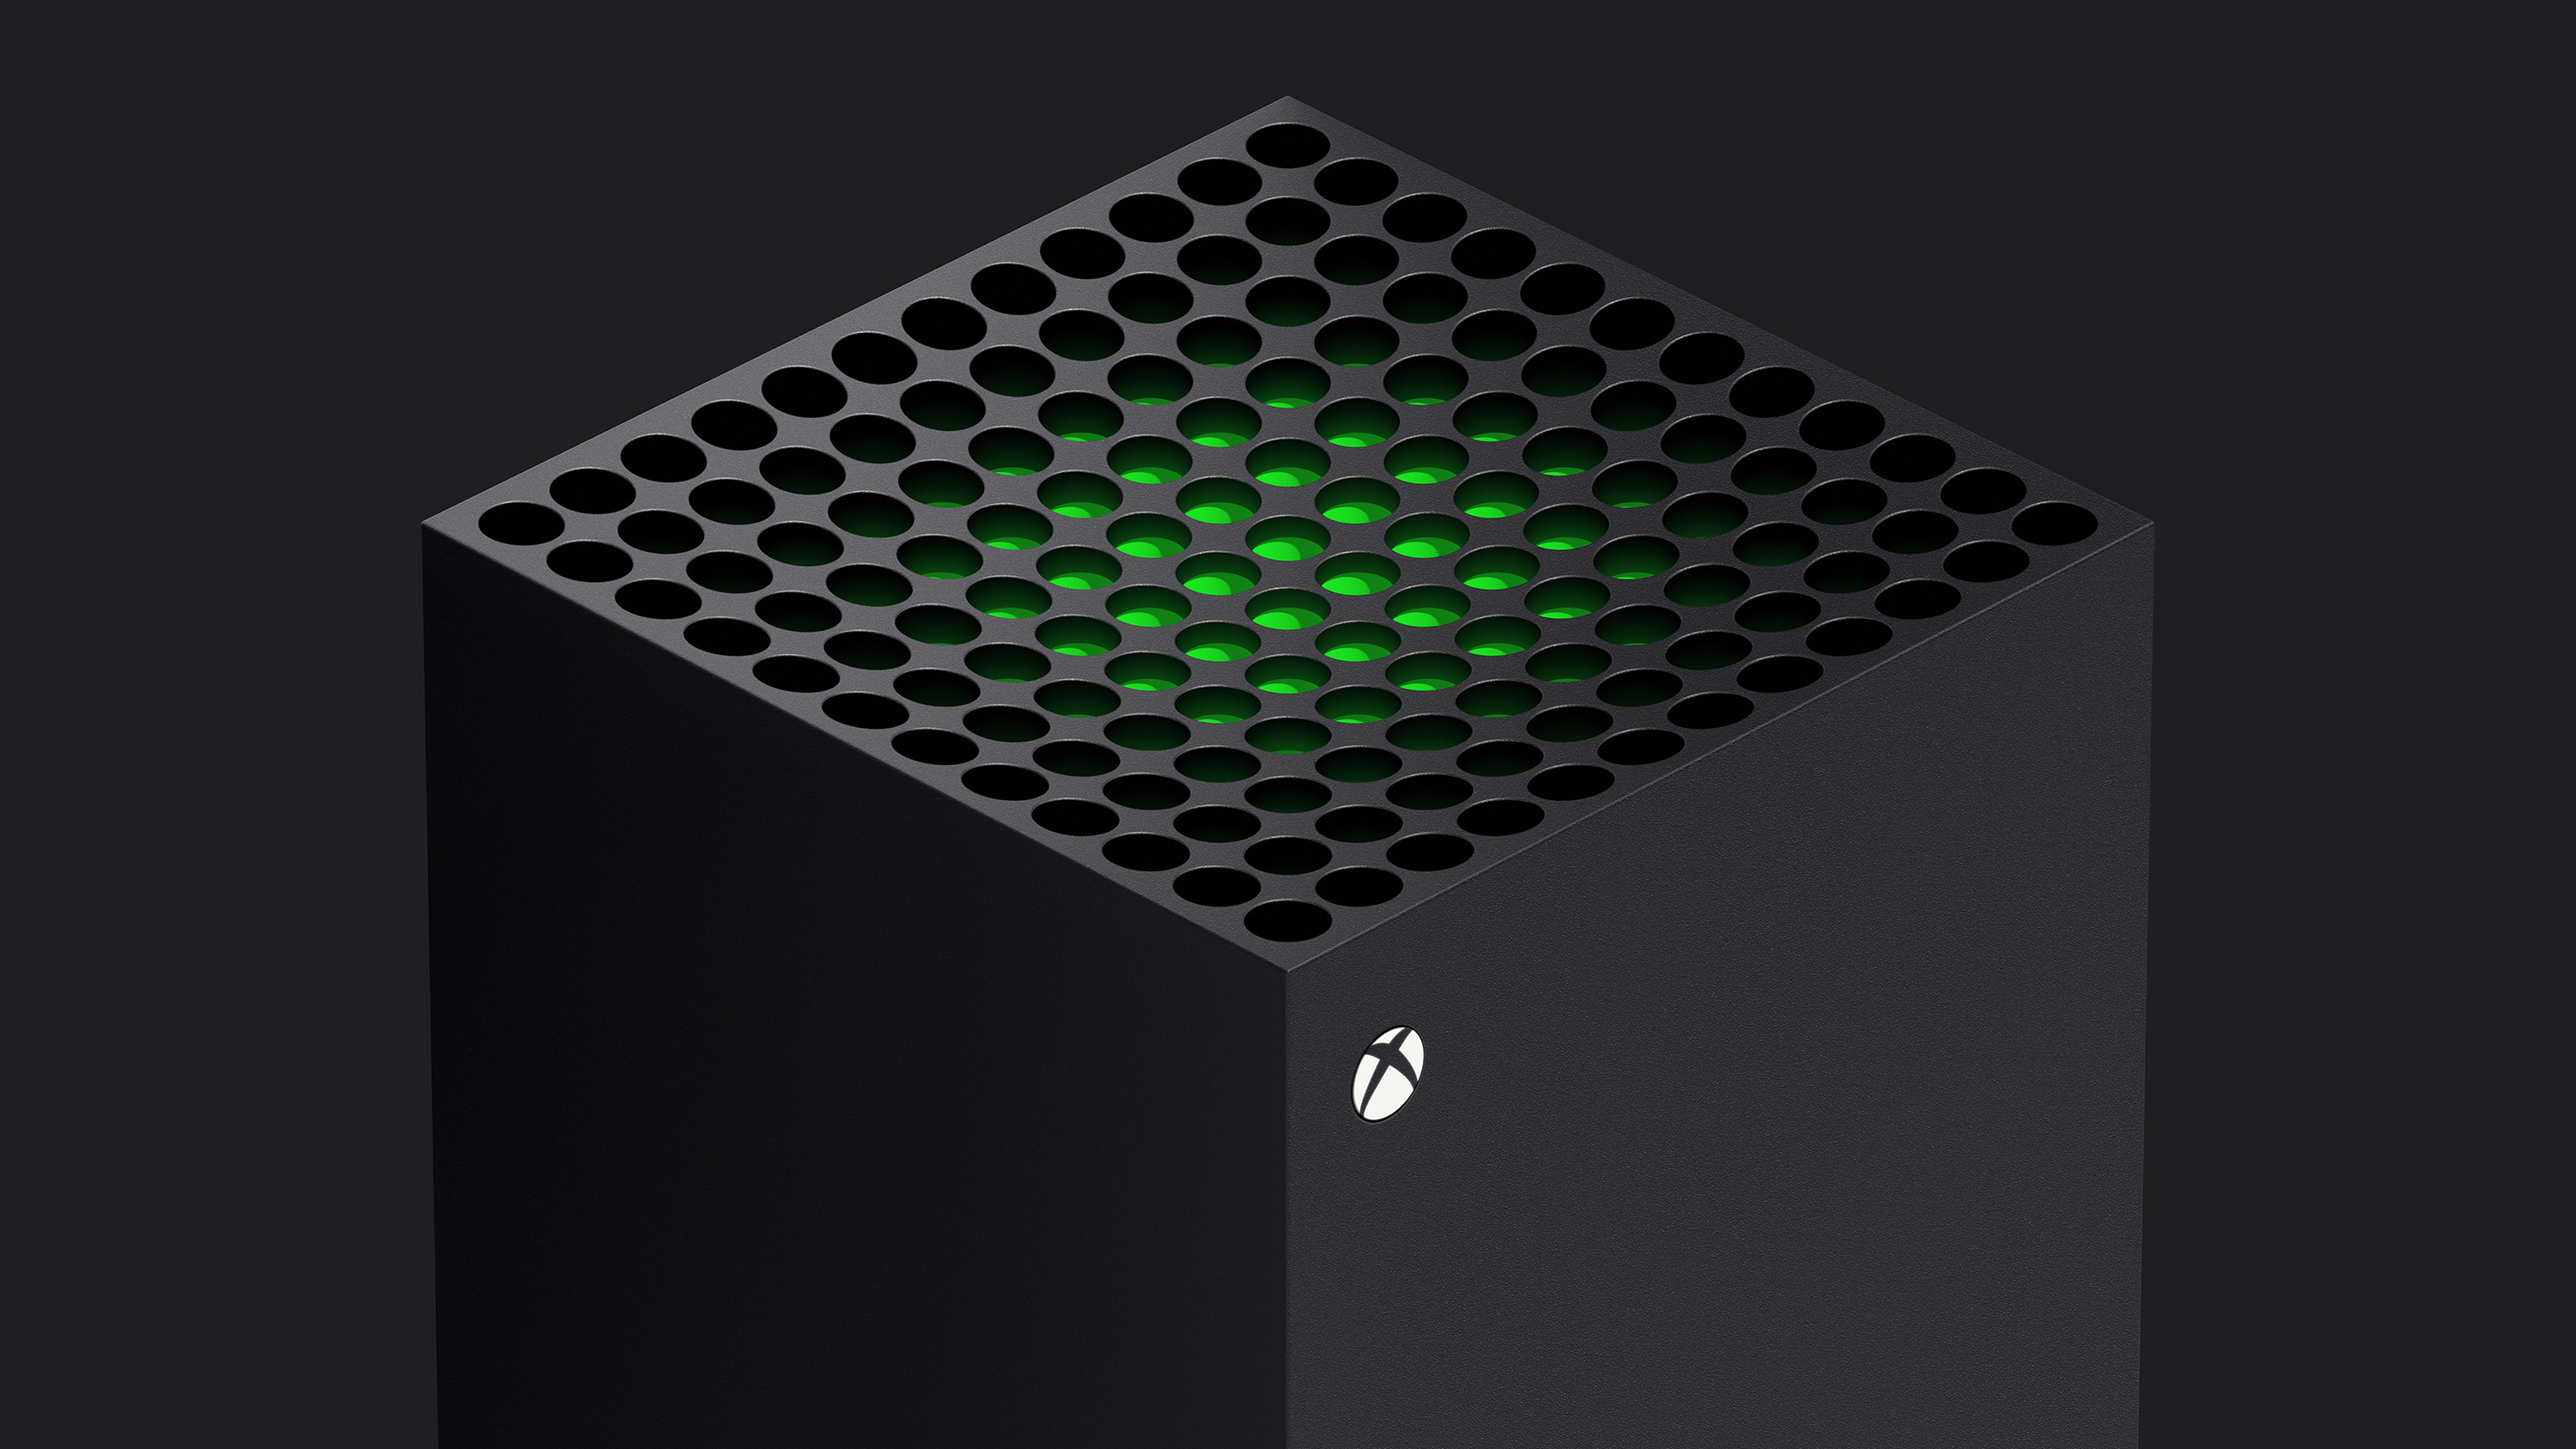 Notre premier avis complet sur la Xbox Series X !